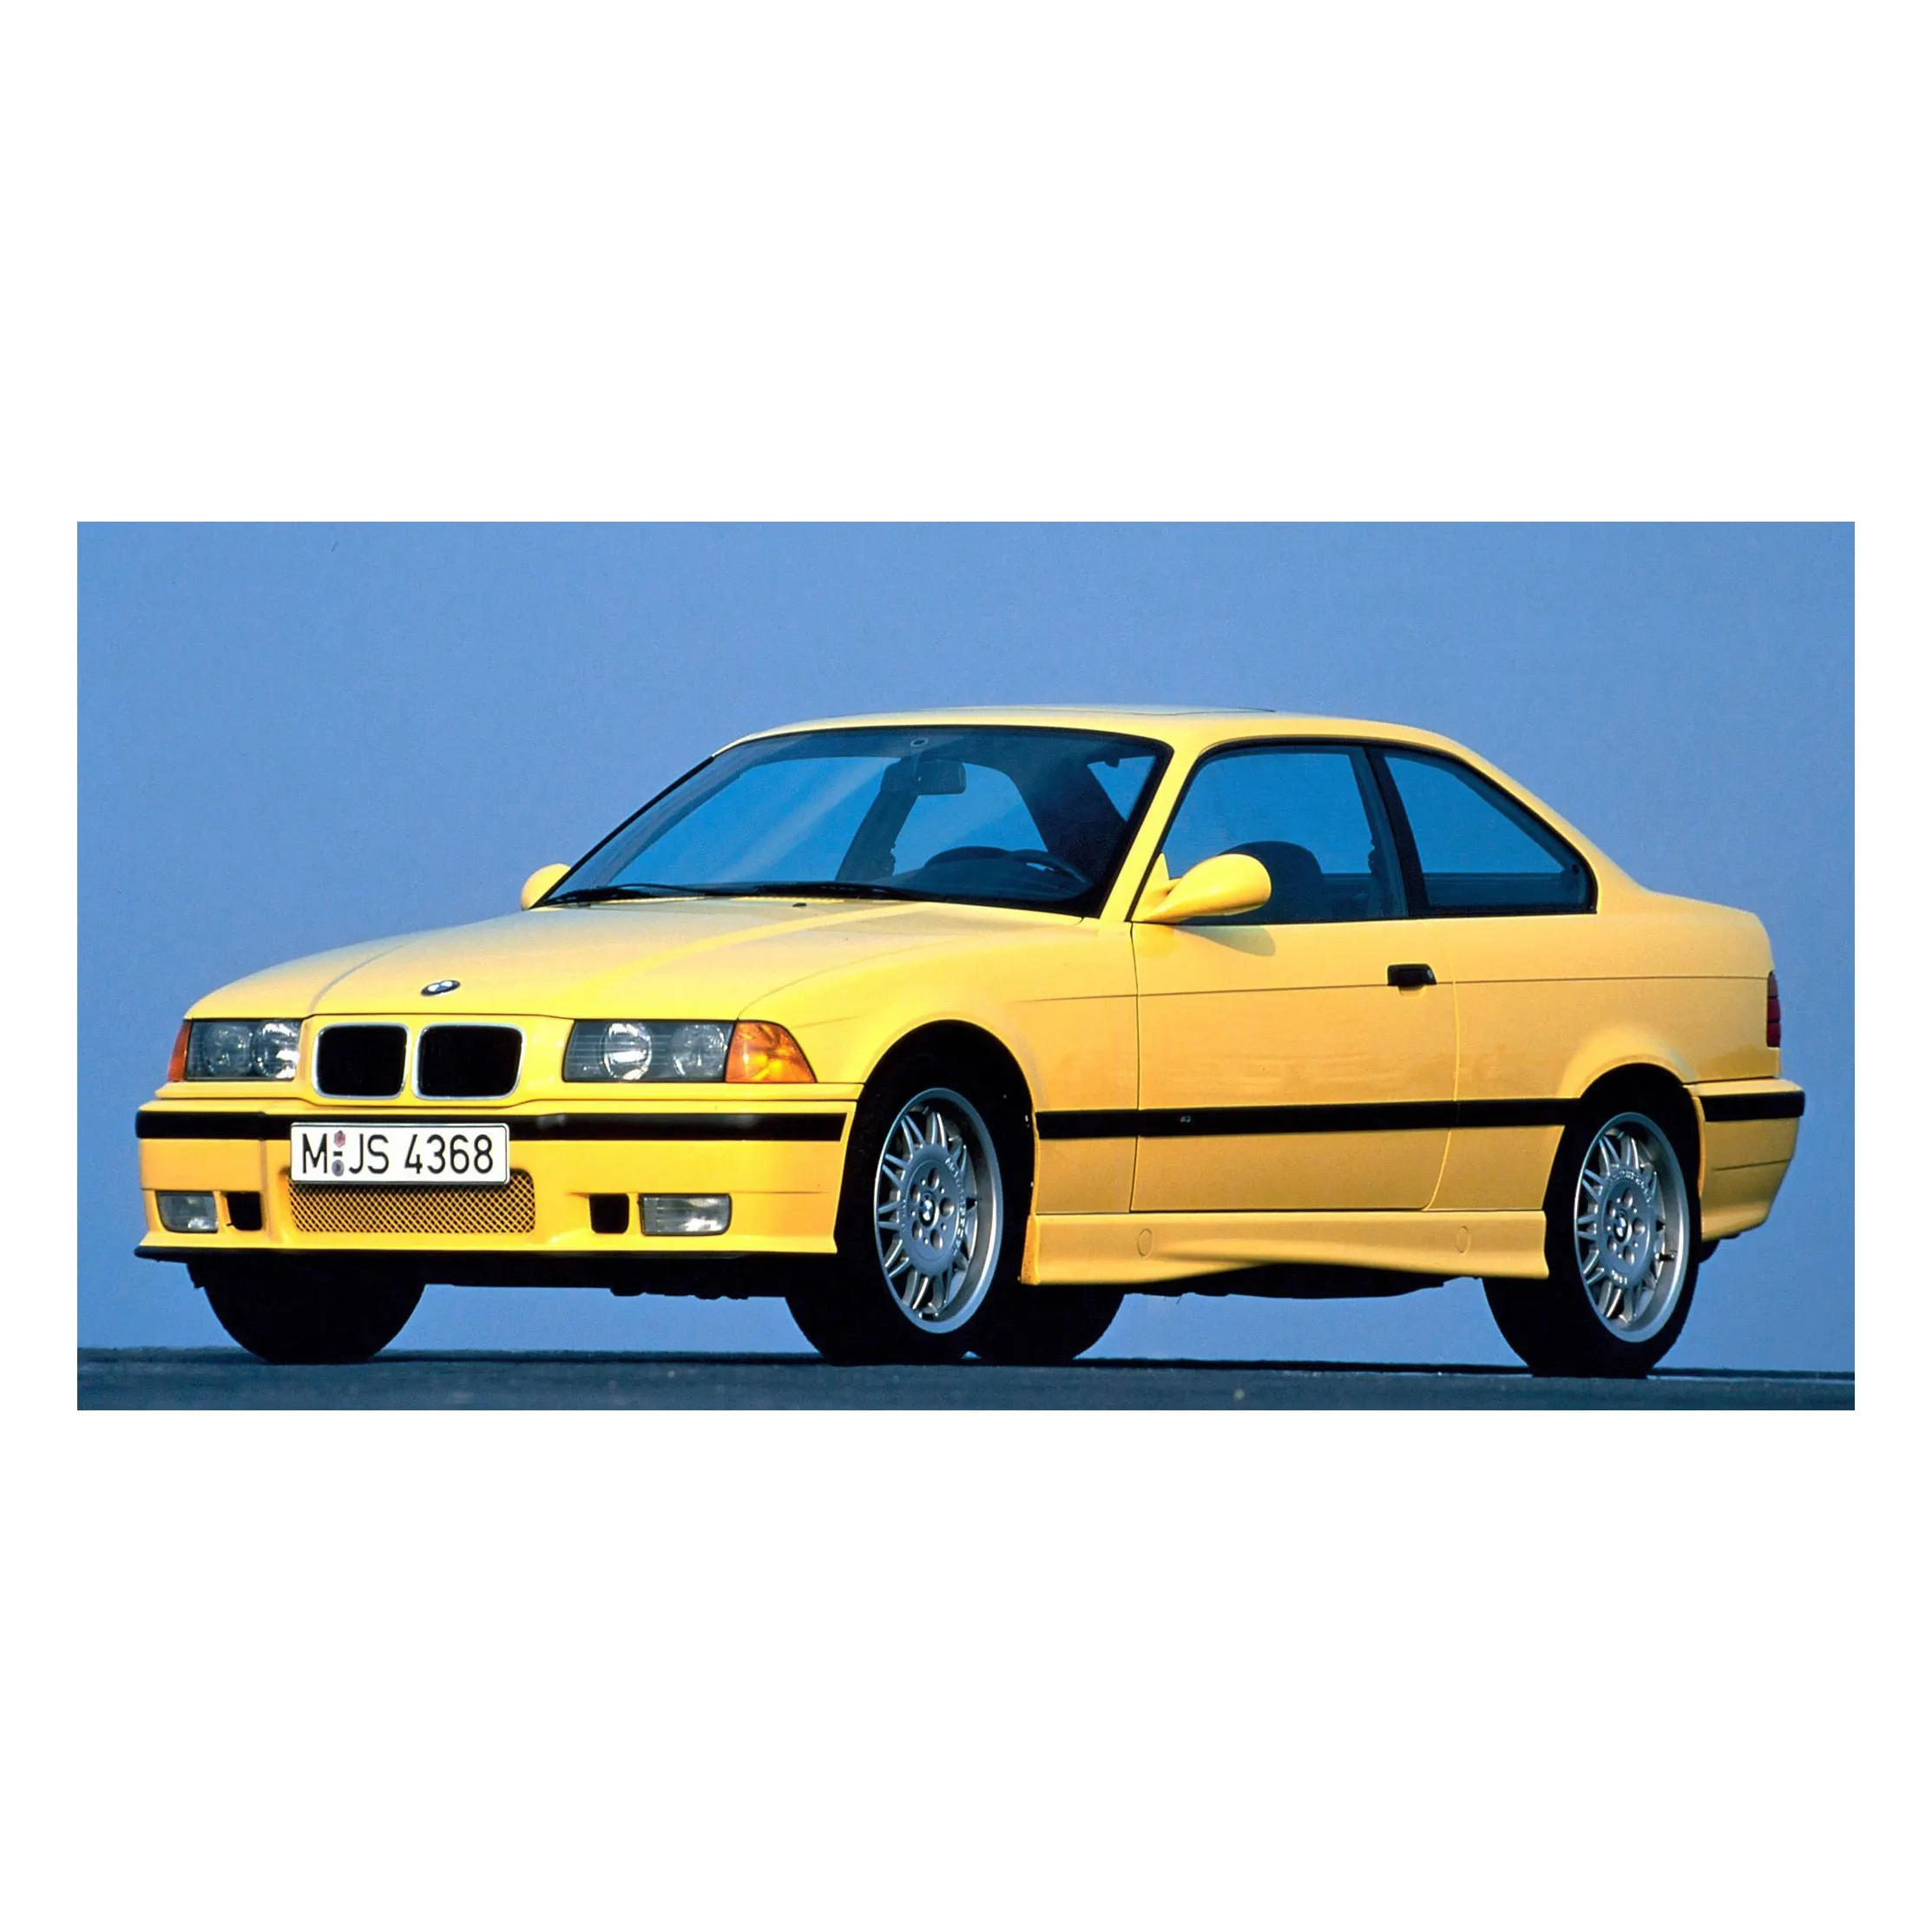 Gebrauchte BMW-Autos mit Zulassung zu verkaufen